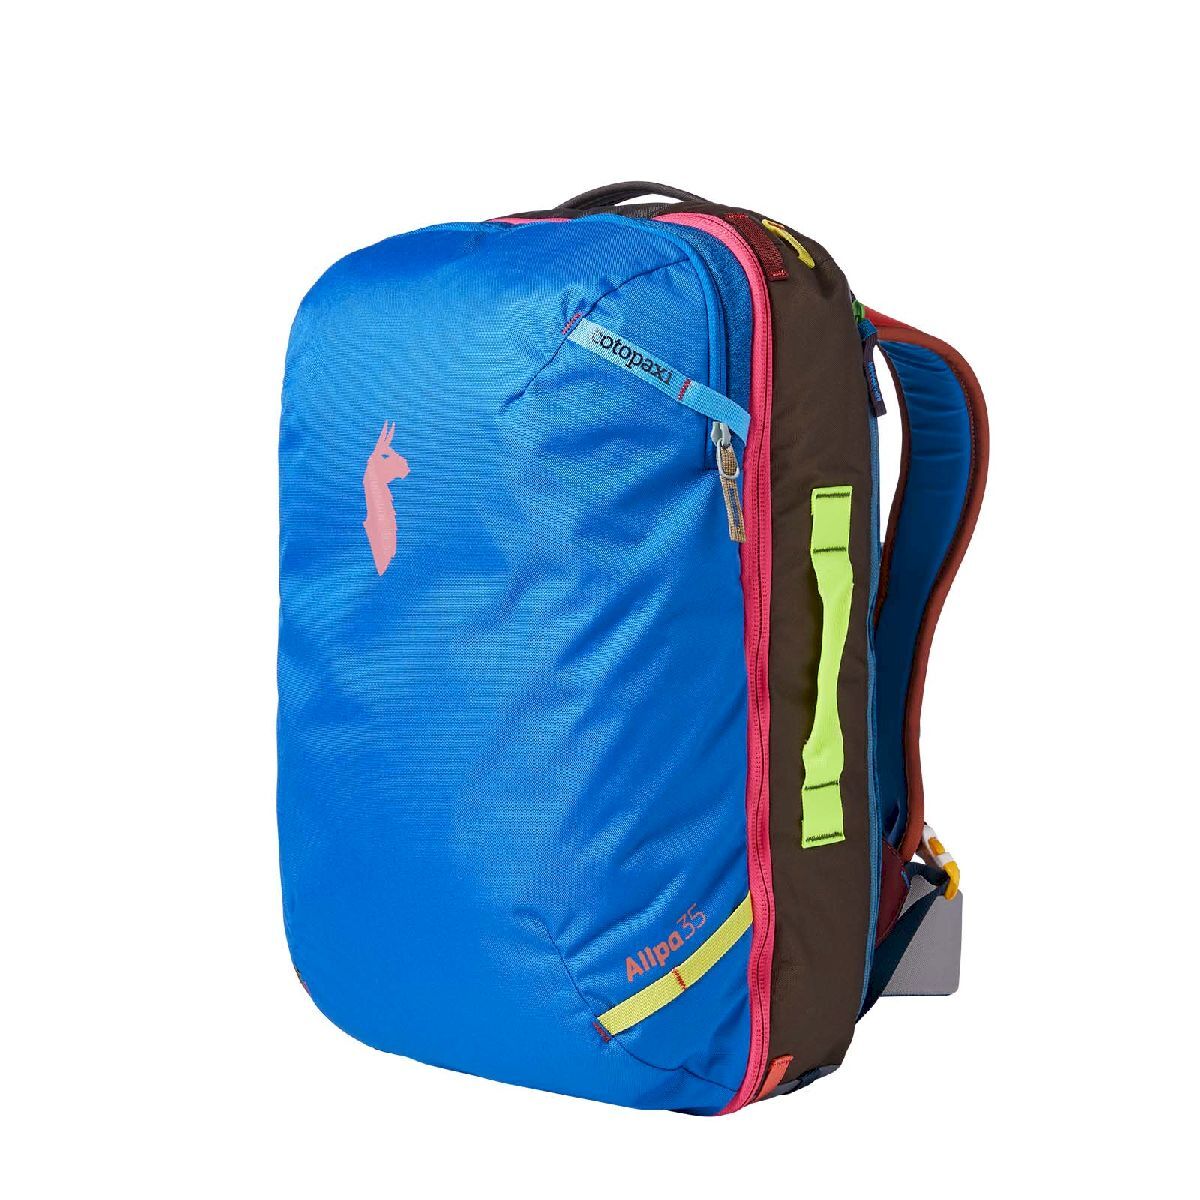 Cotopaxi Allpa 35L Travel Pack - Sac à dos de voyage